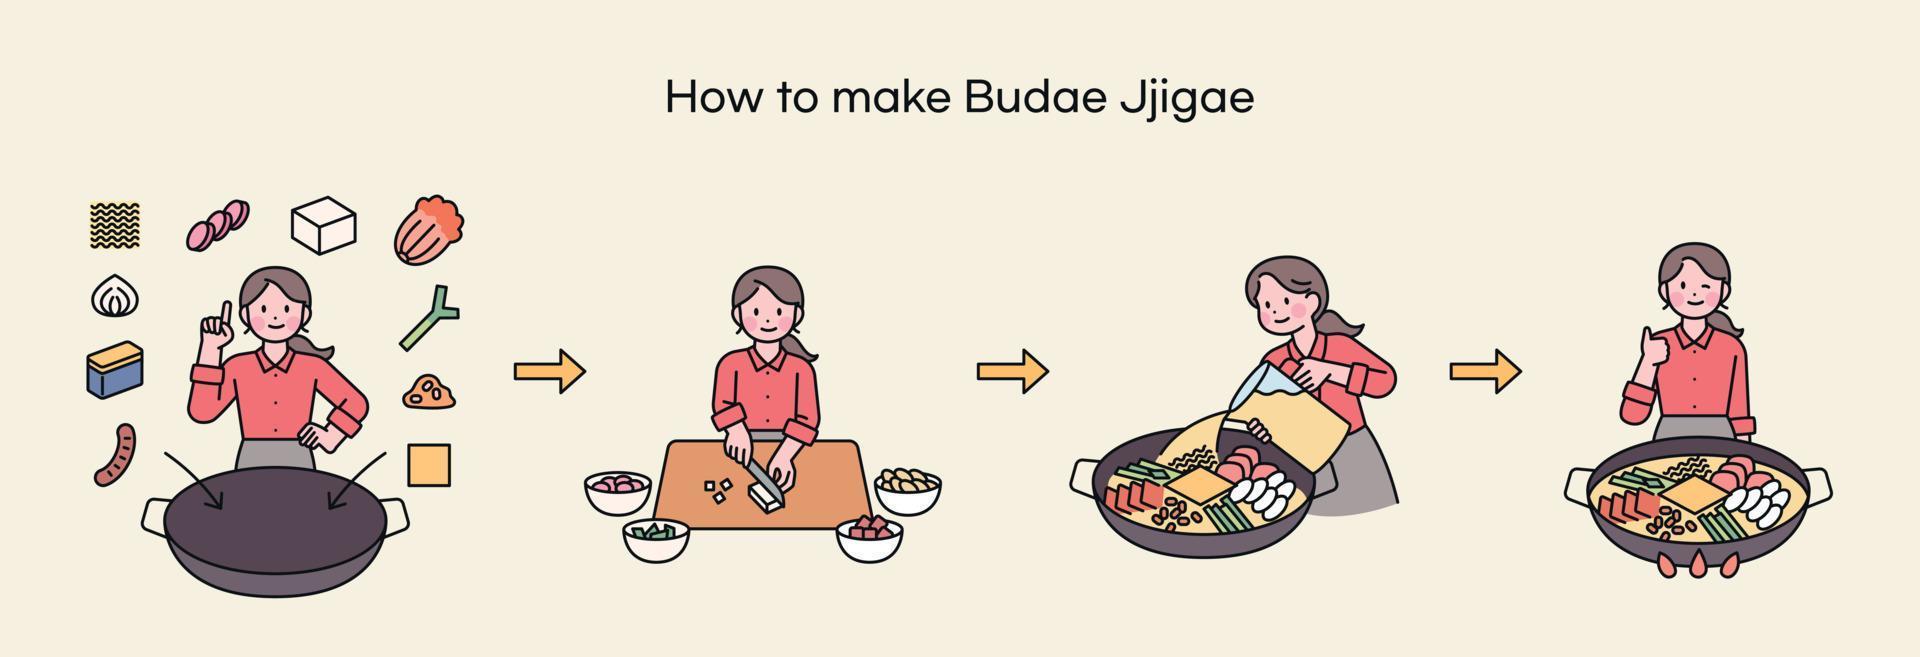 budae-jjigae, una comida llena de historia coreana. un chef explica cómo hacer budae-jjigae. vector